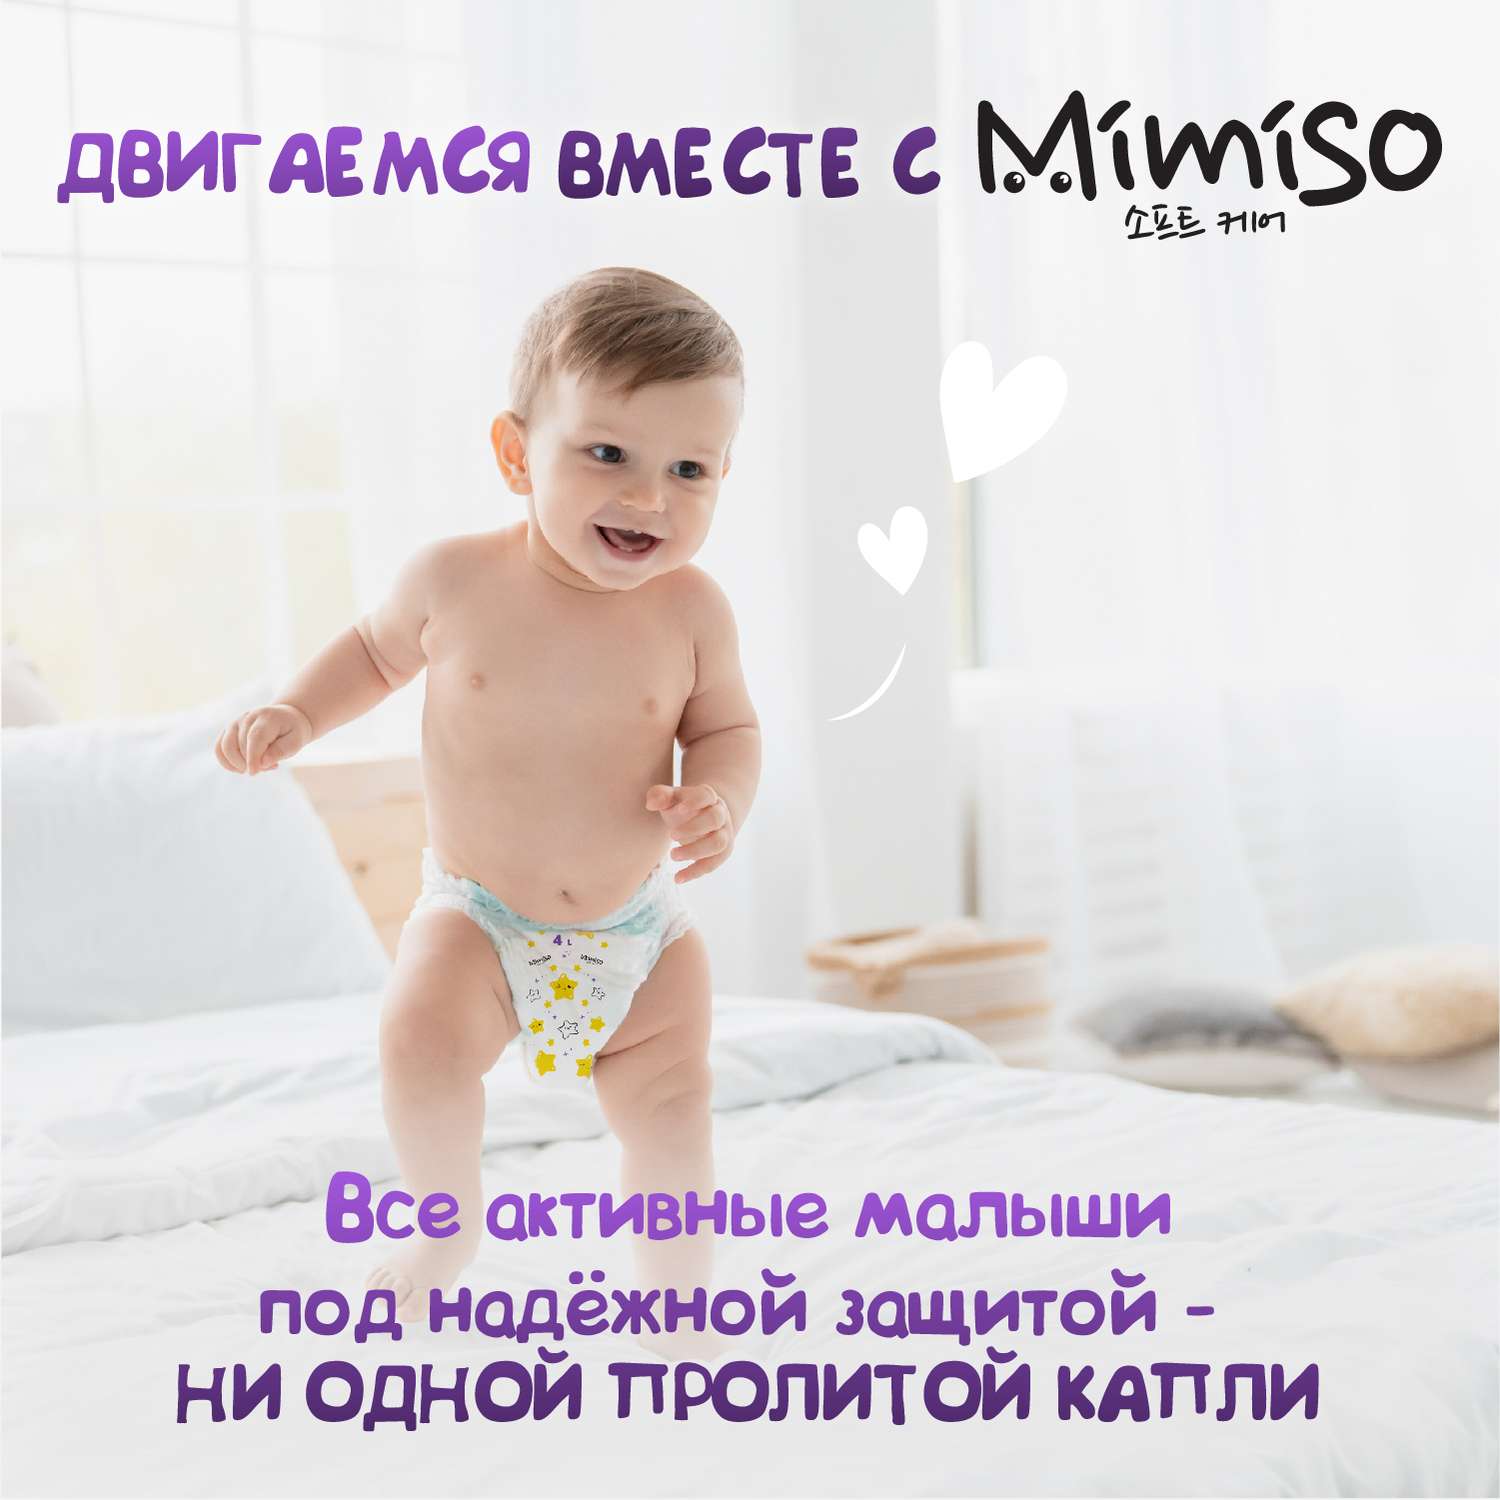 Трусики Mimiso одноразовые для детей 5/XL 13-20 кг 36шт - фото 10